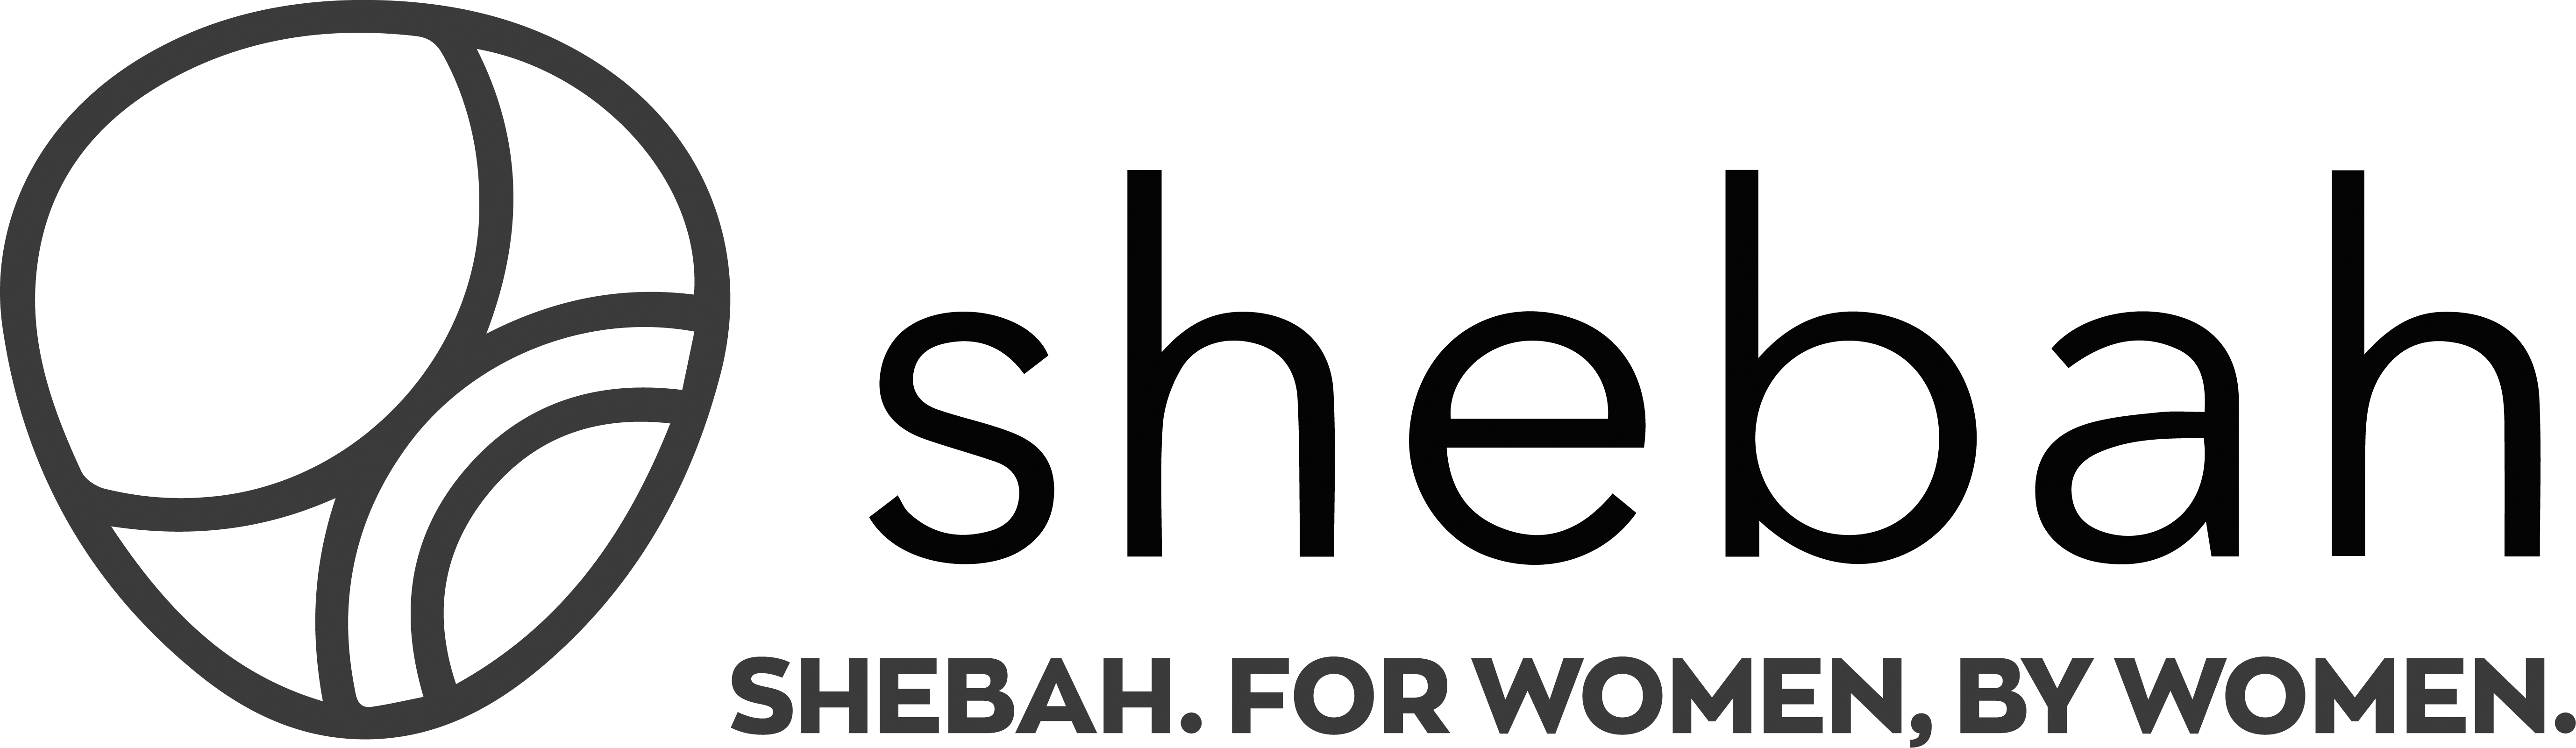 united co member shebah